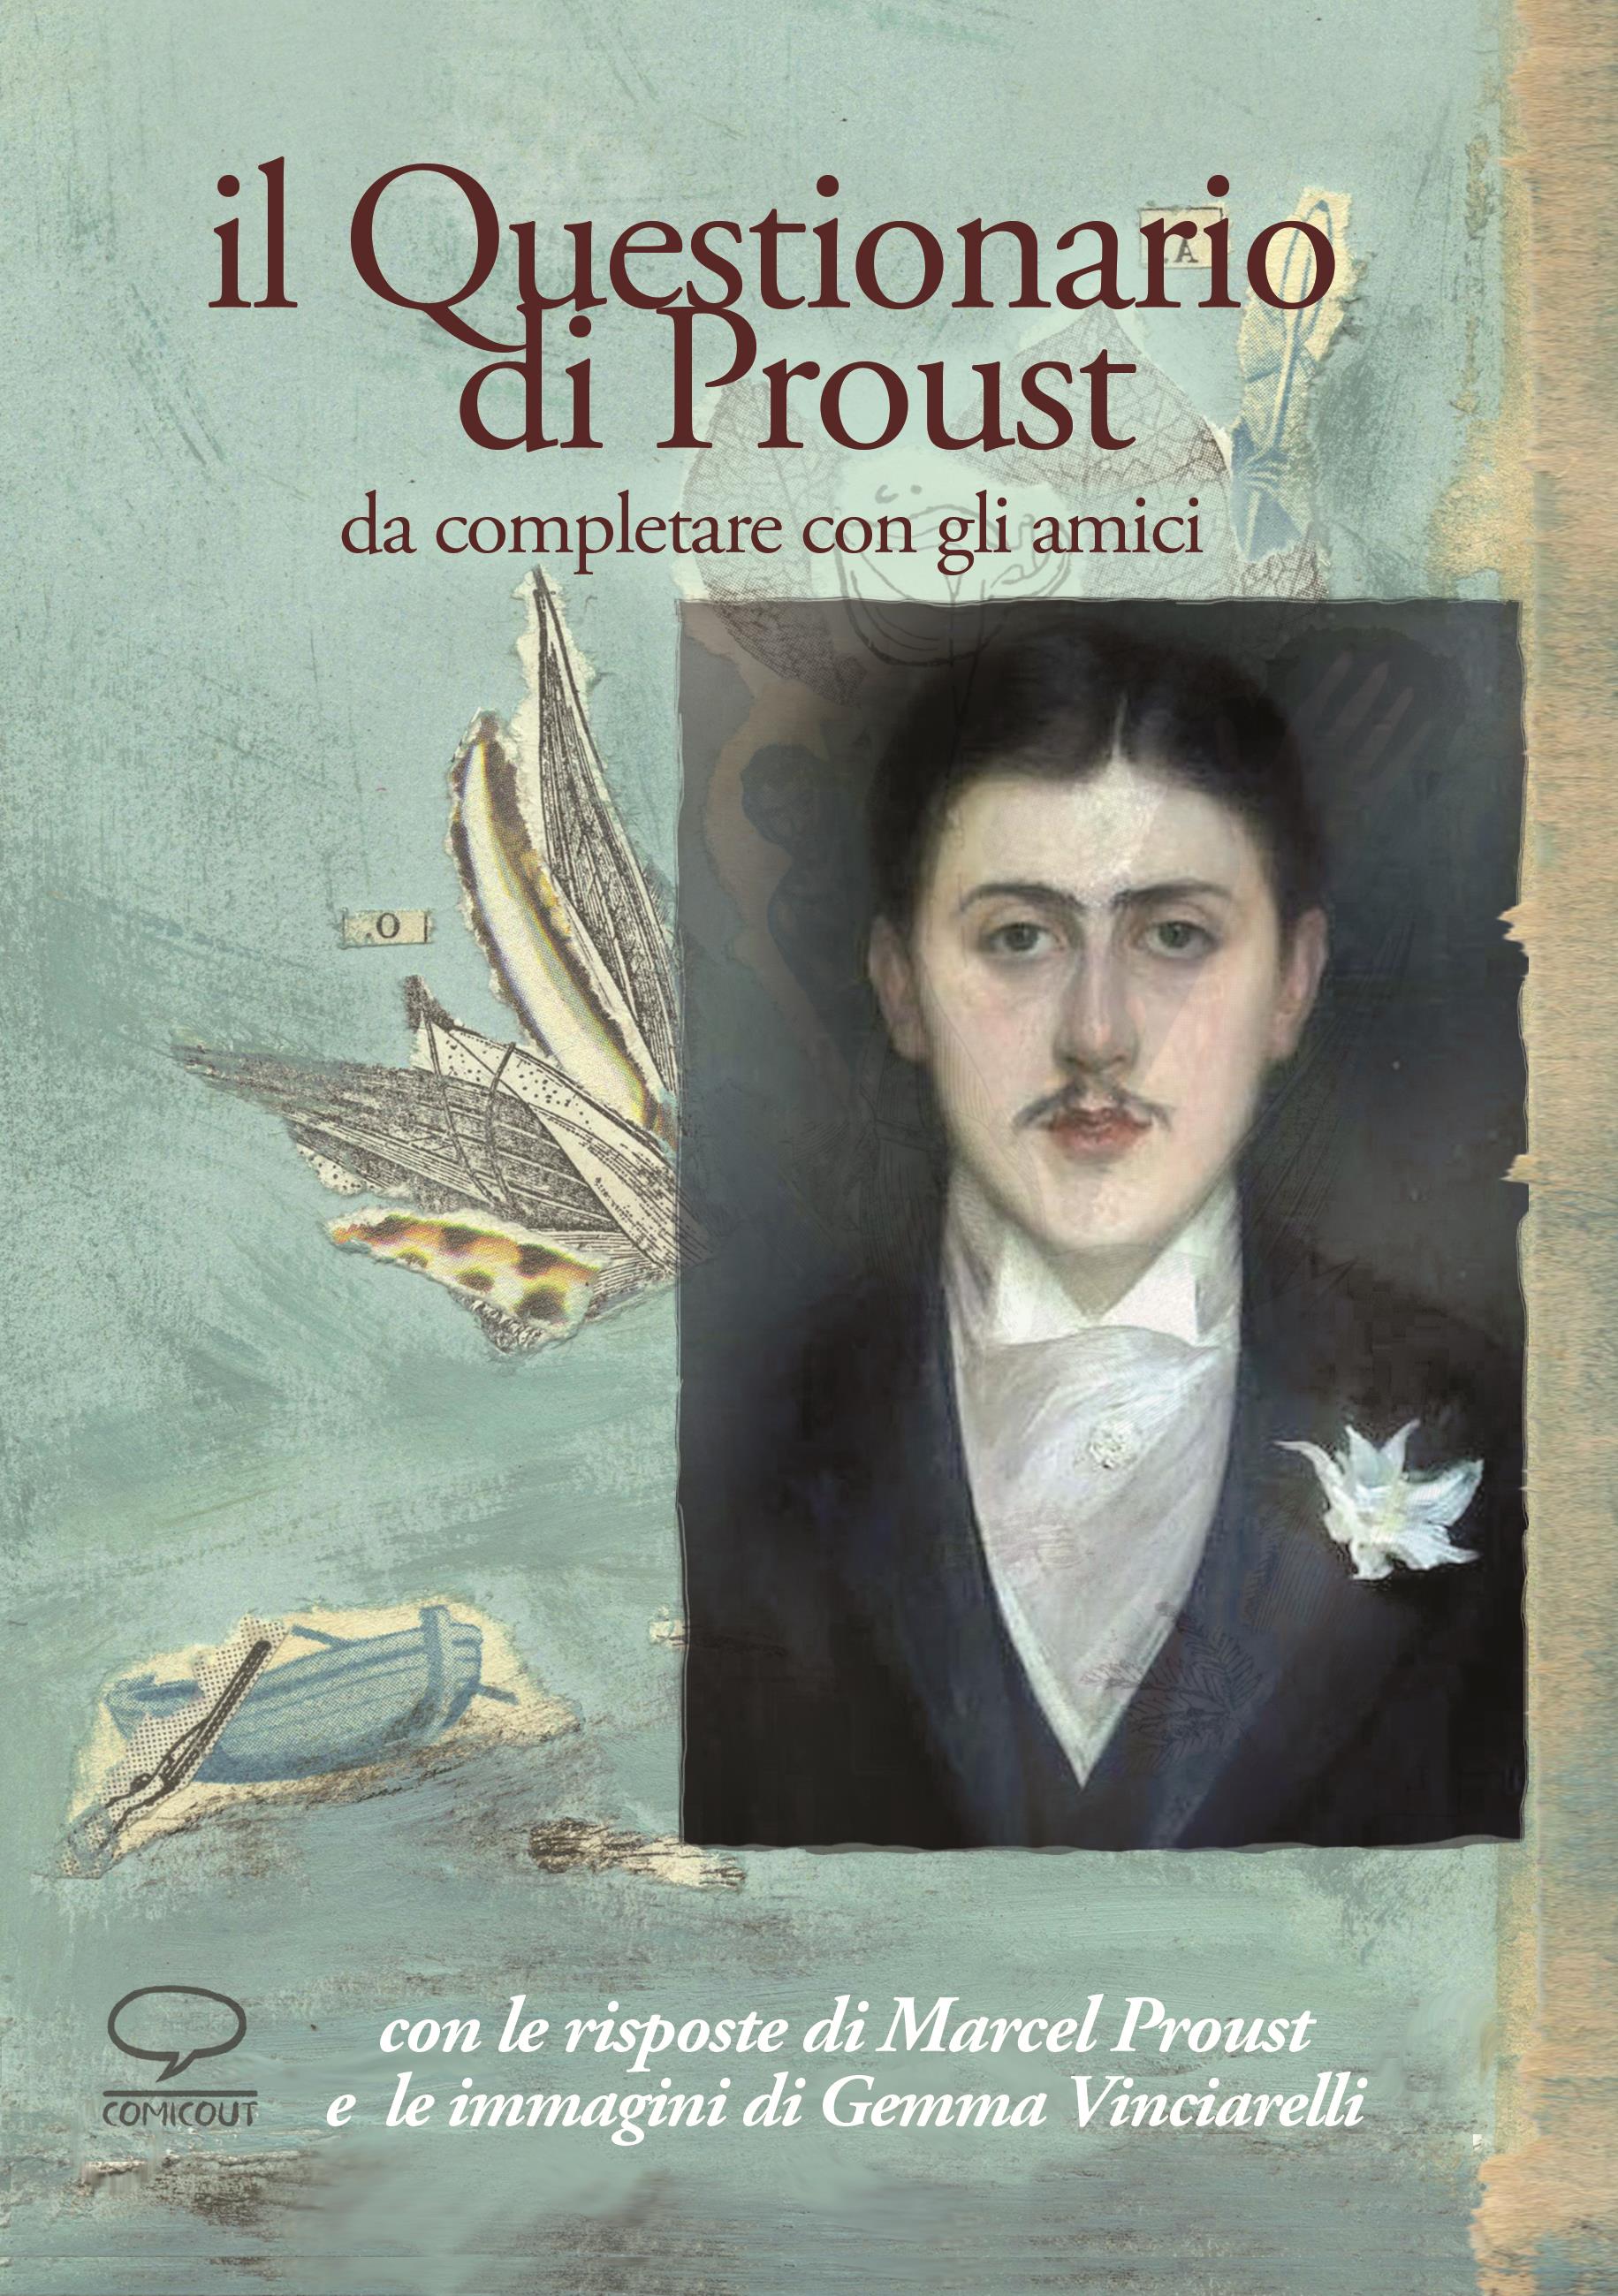 Questionario di Proust (ComicOut)